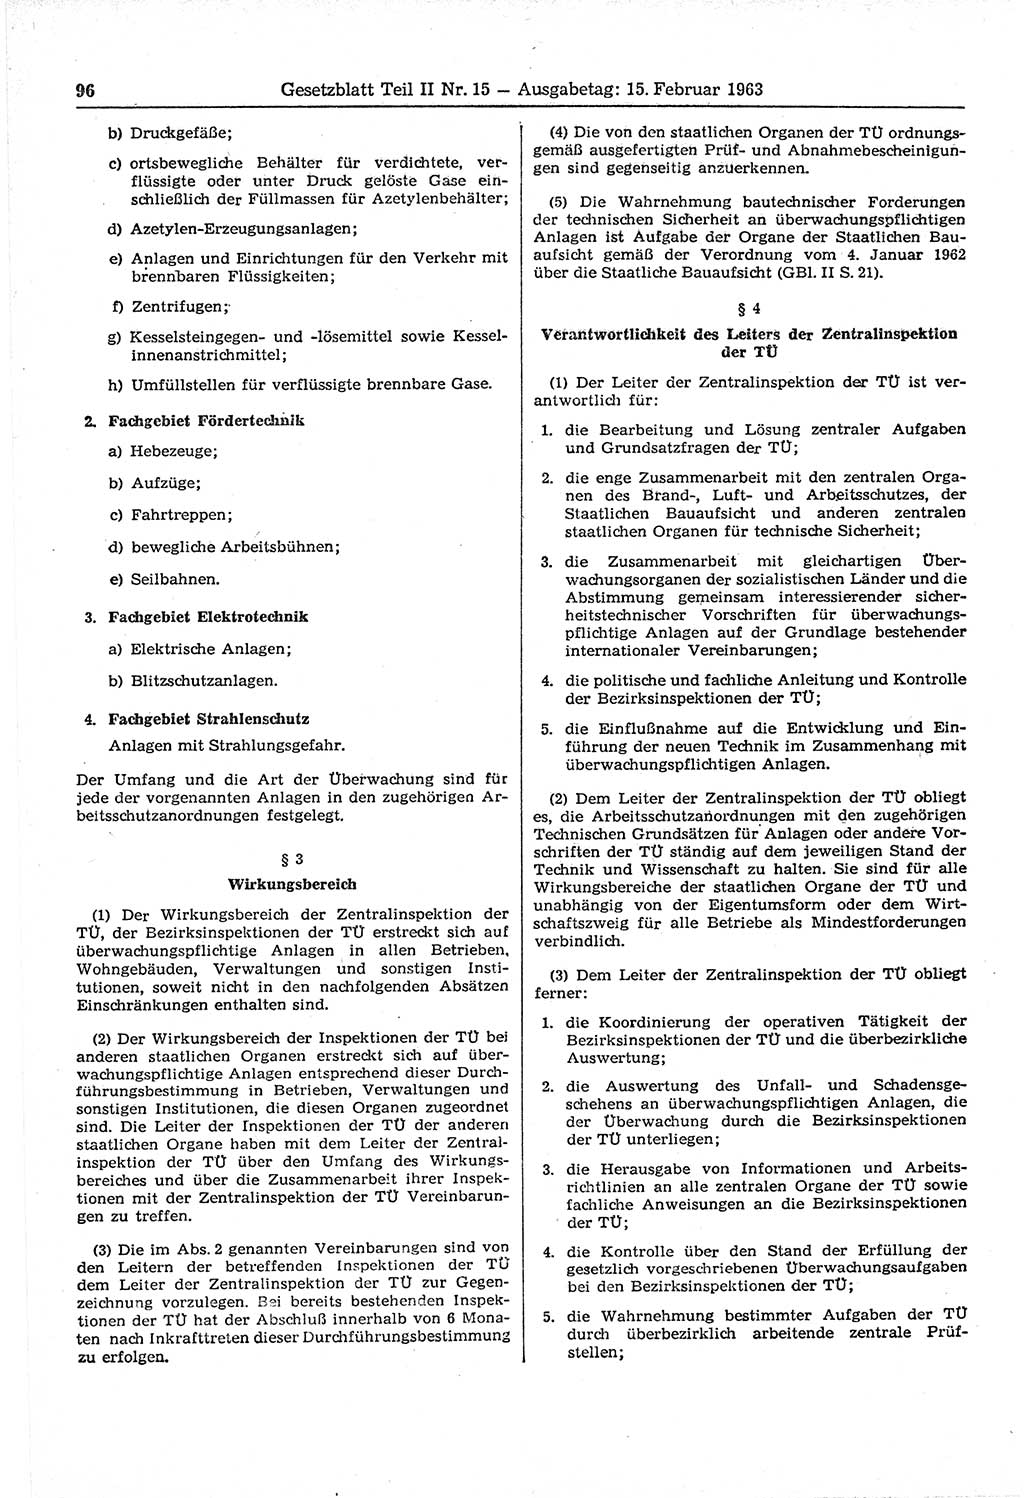 Gesetzblatt (GBl.) der Deutschen Demokratischen Republik (DDR) Teil ⅠⅠ 1963, Seite 96 (GBl. DDR ⅠⅠ 1963, S. 96)